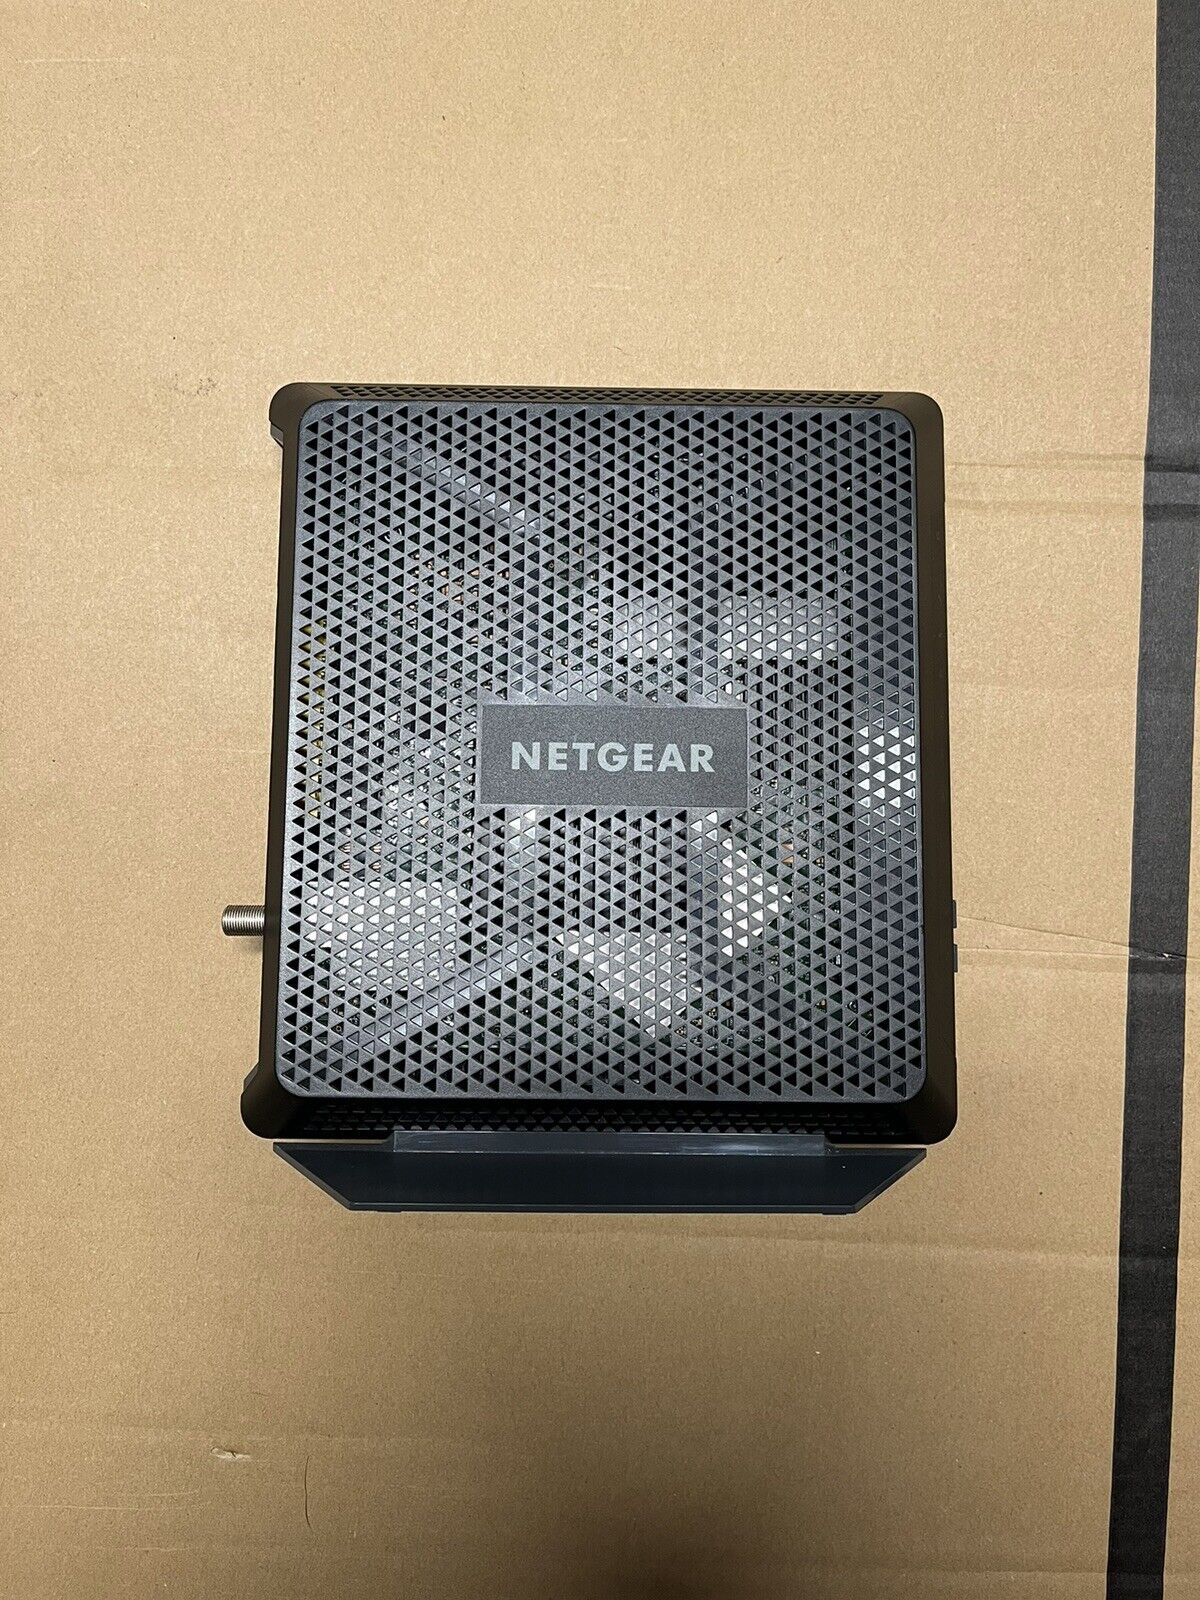 Netgear AC1900 WiFi Cable Modem Router C6900